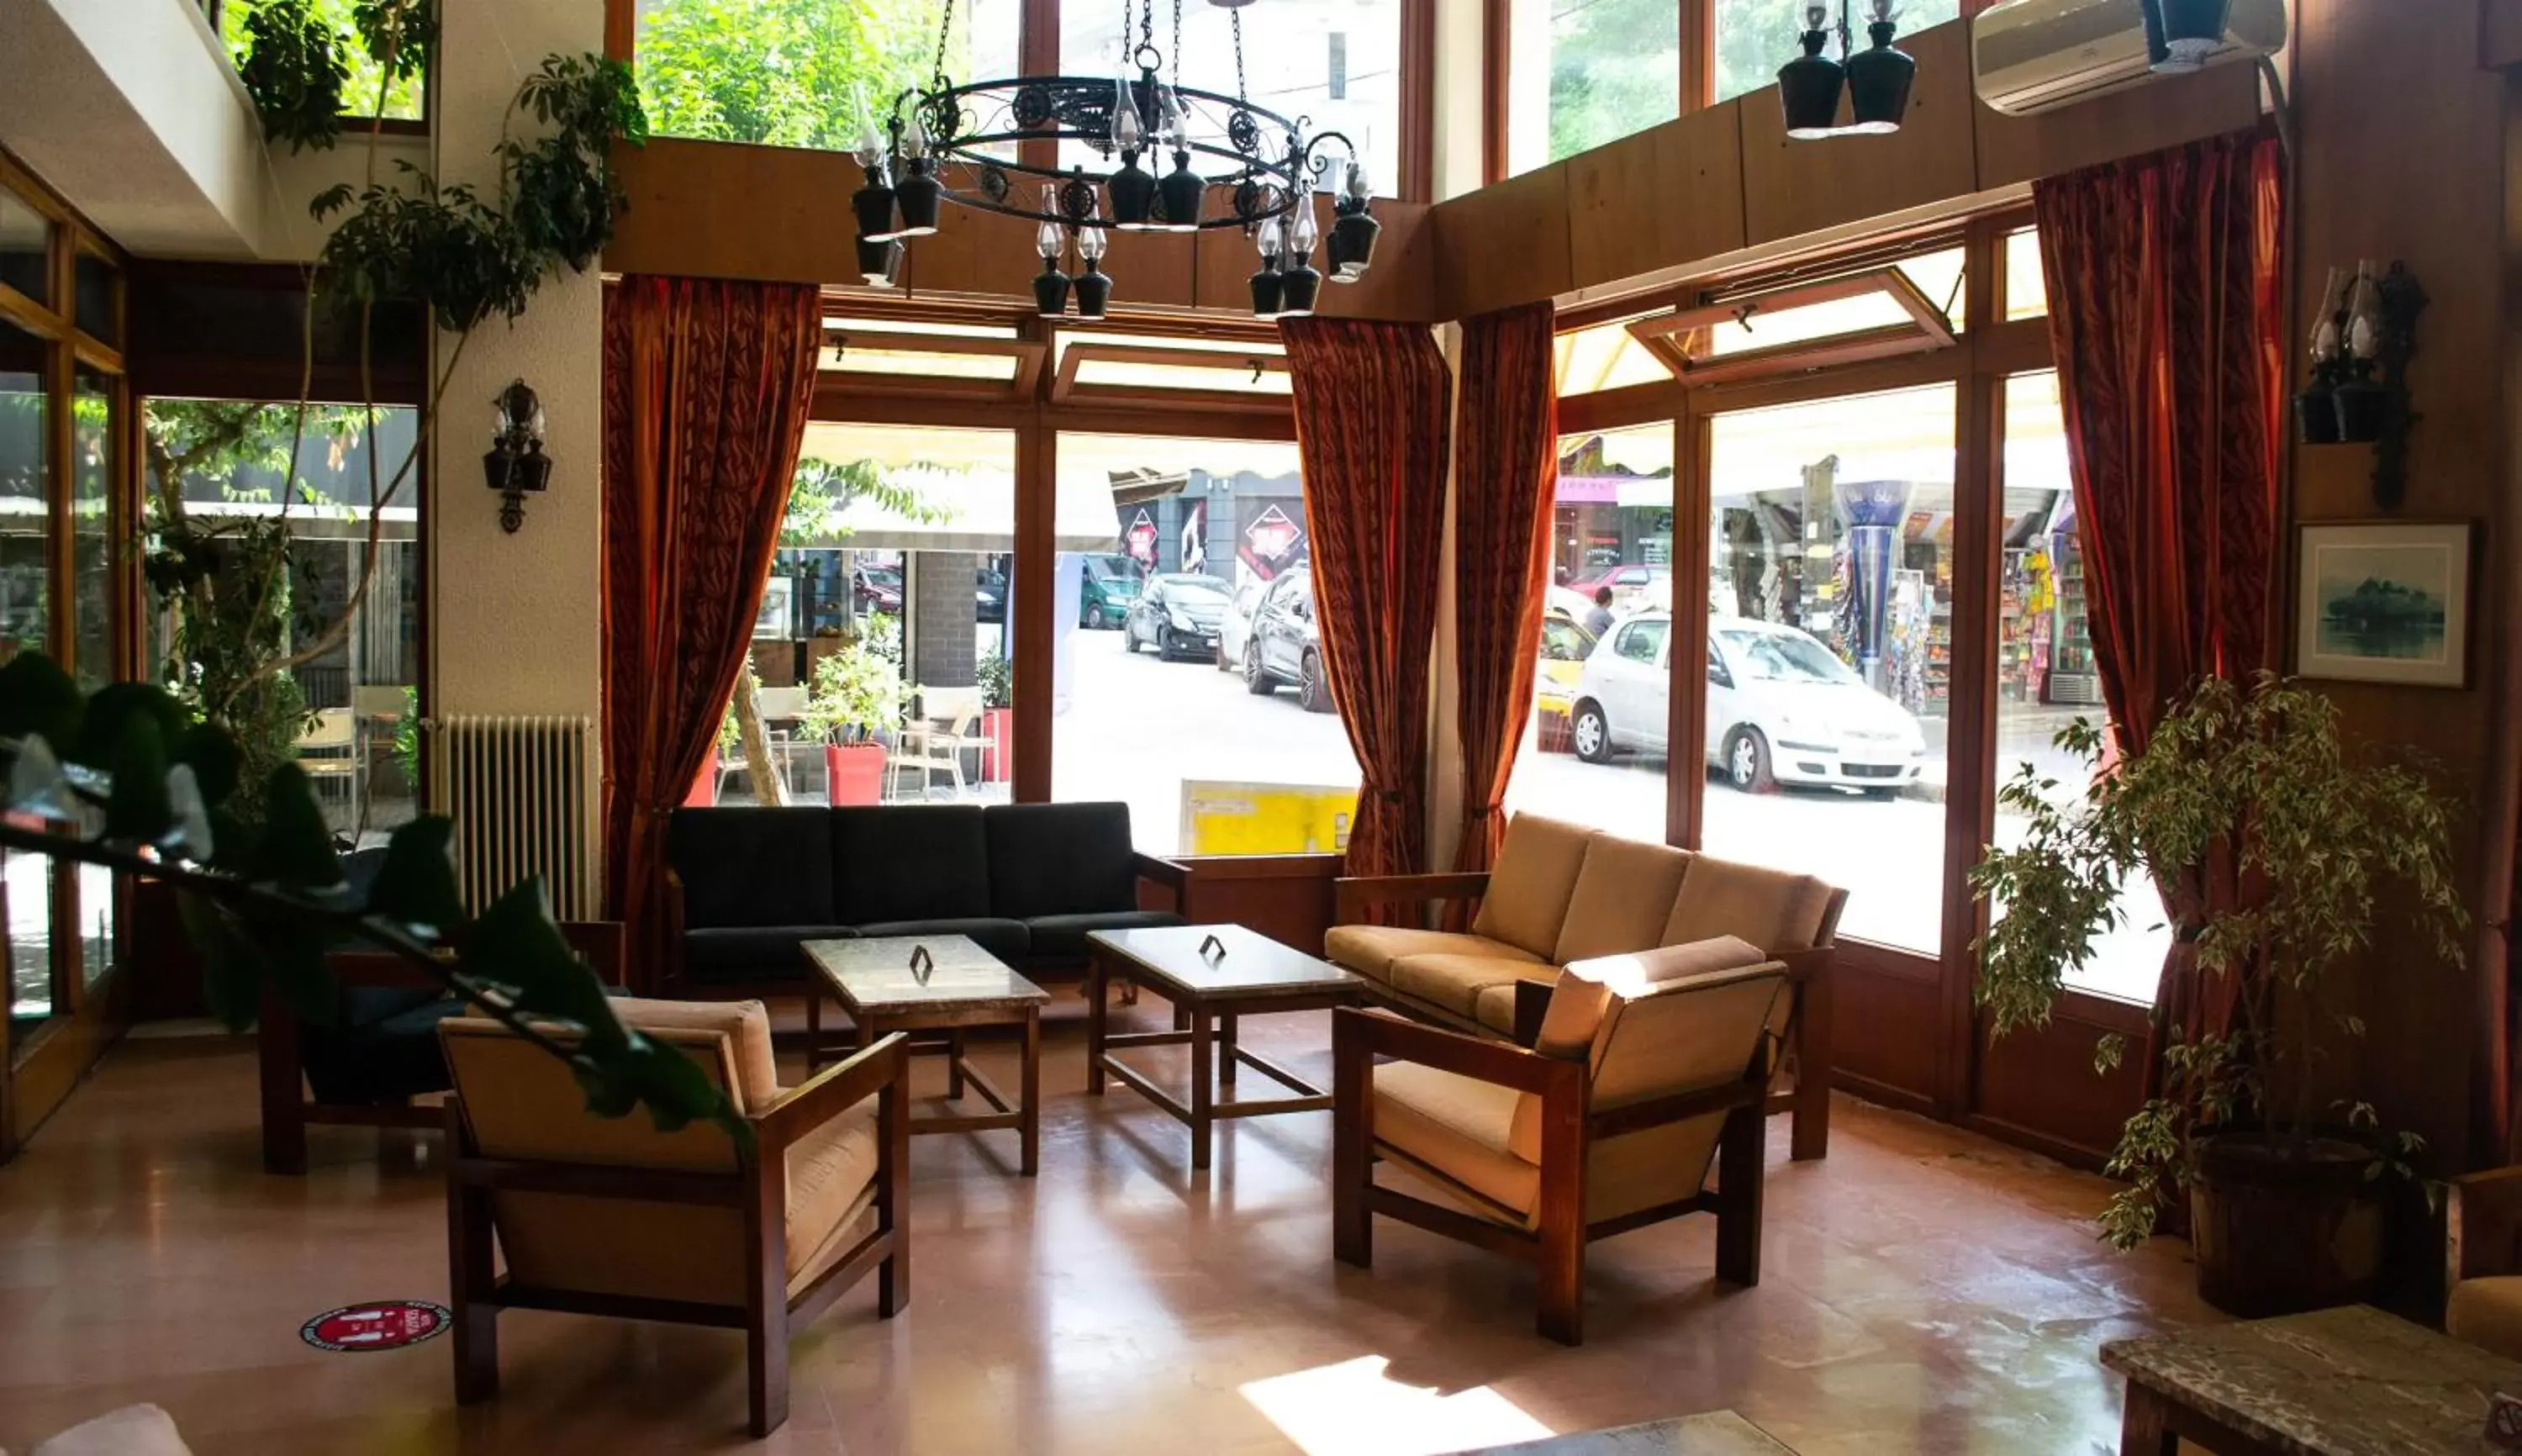 Lobby or reception in Egnatia Hotel